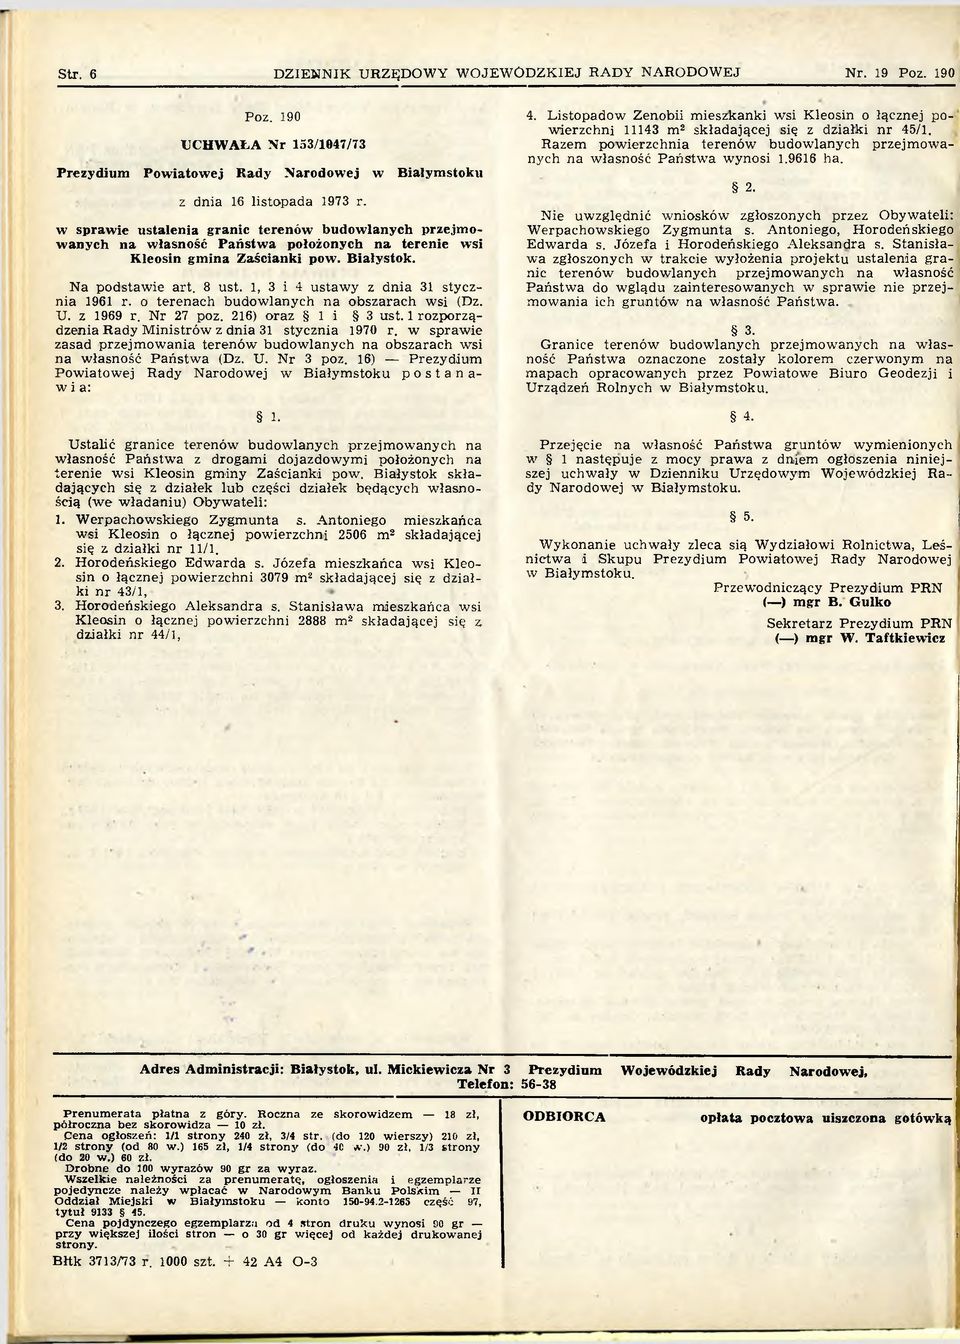 1, 3 i 4 ustaw y z dnia 31 stycznia 1961 r. o terenach budow lanych na obszarach wsi (Dz. U. z 1969 r. Nr 27 poz. 216) oraz 1 i 3 ust. 1 rozporządzenia Rady M inistrów z dnia 31 stycznia 1970 r.